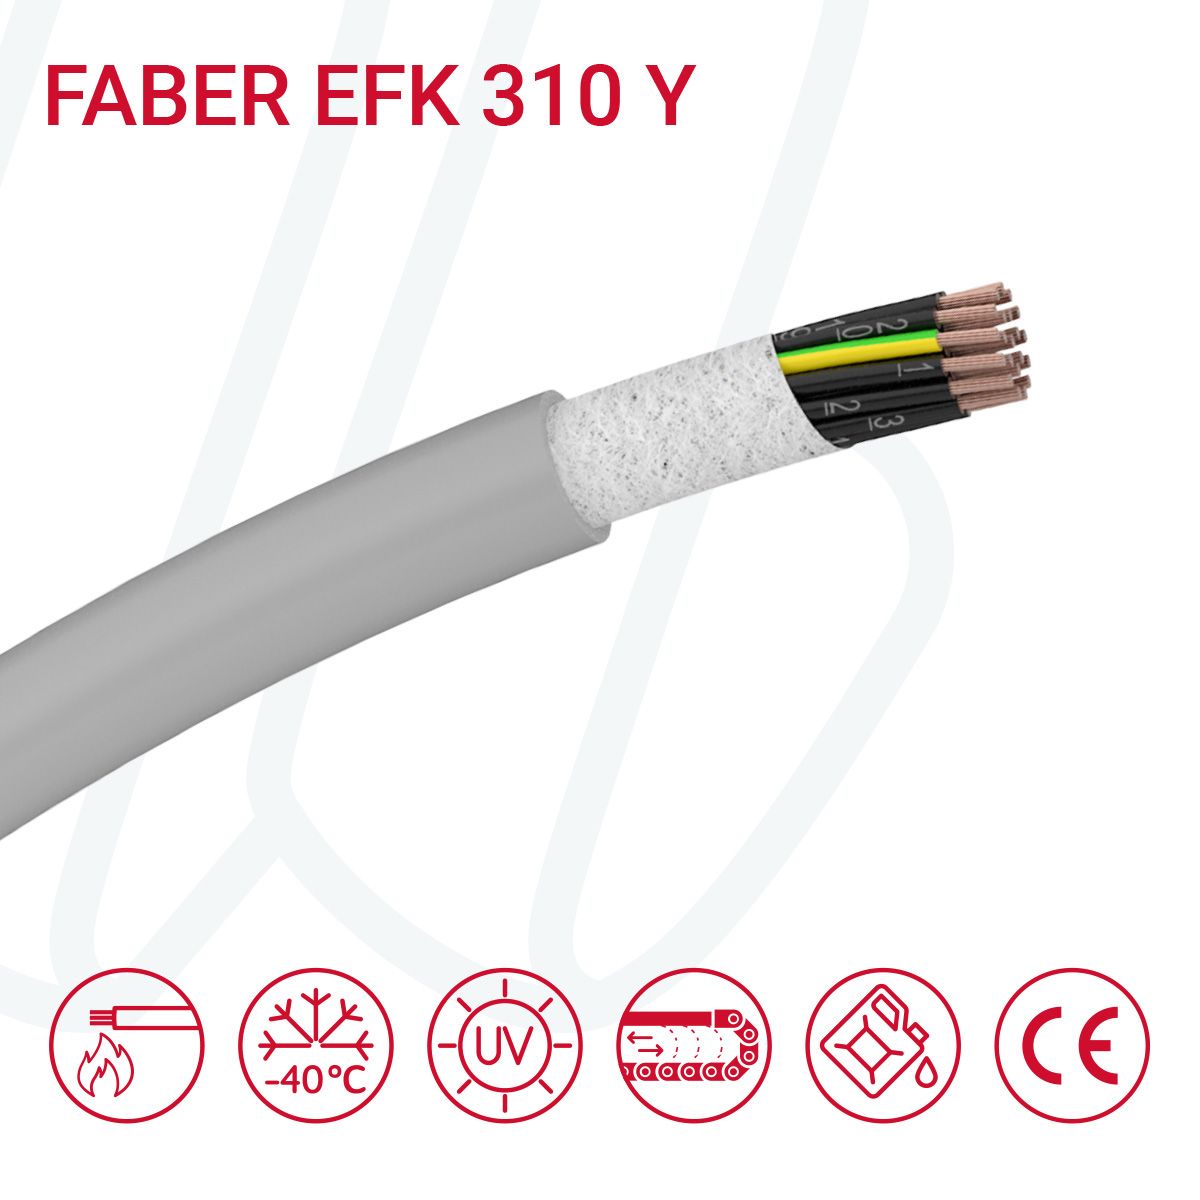 Кабель FABER EFK 310 Y 10G0.75 cUL сірий, 10, 0.75